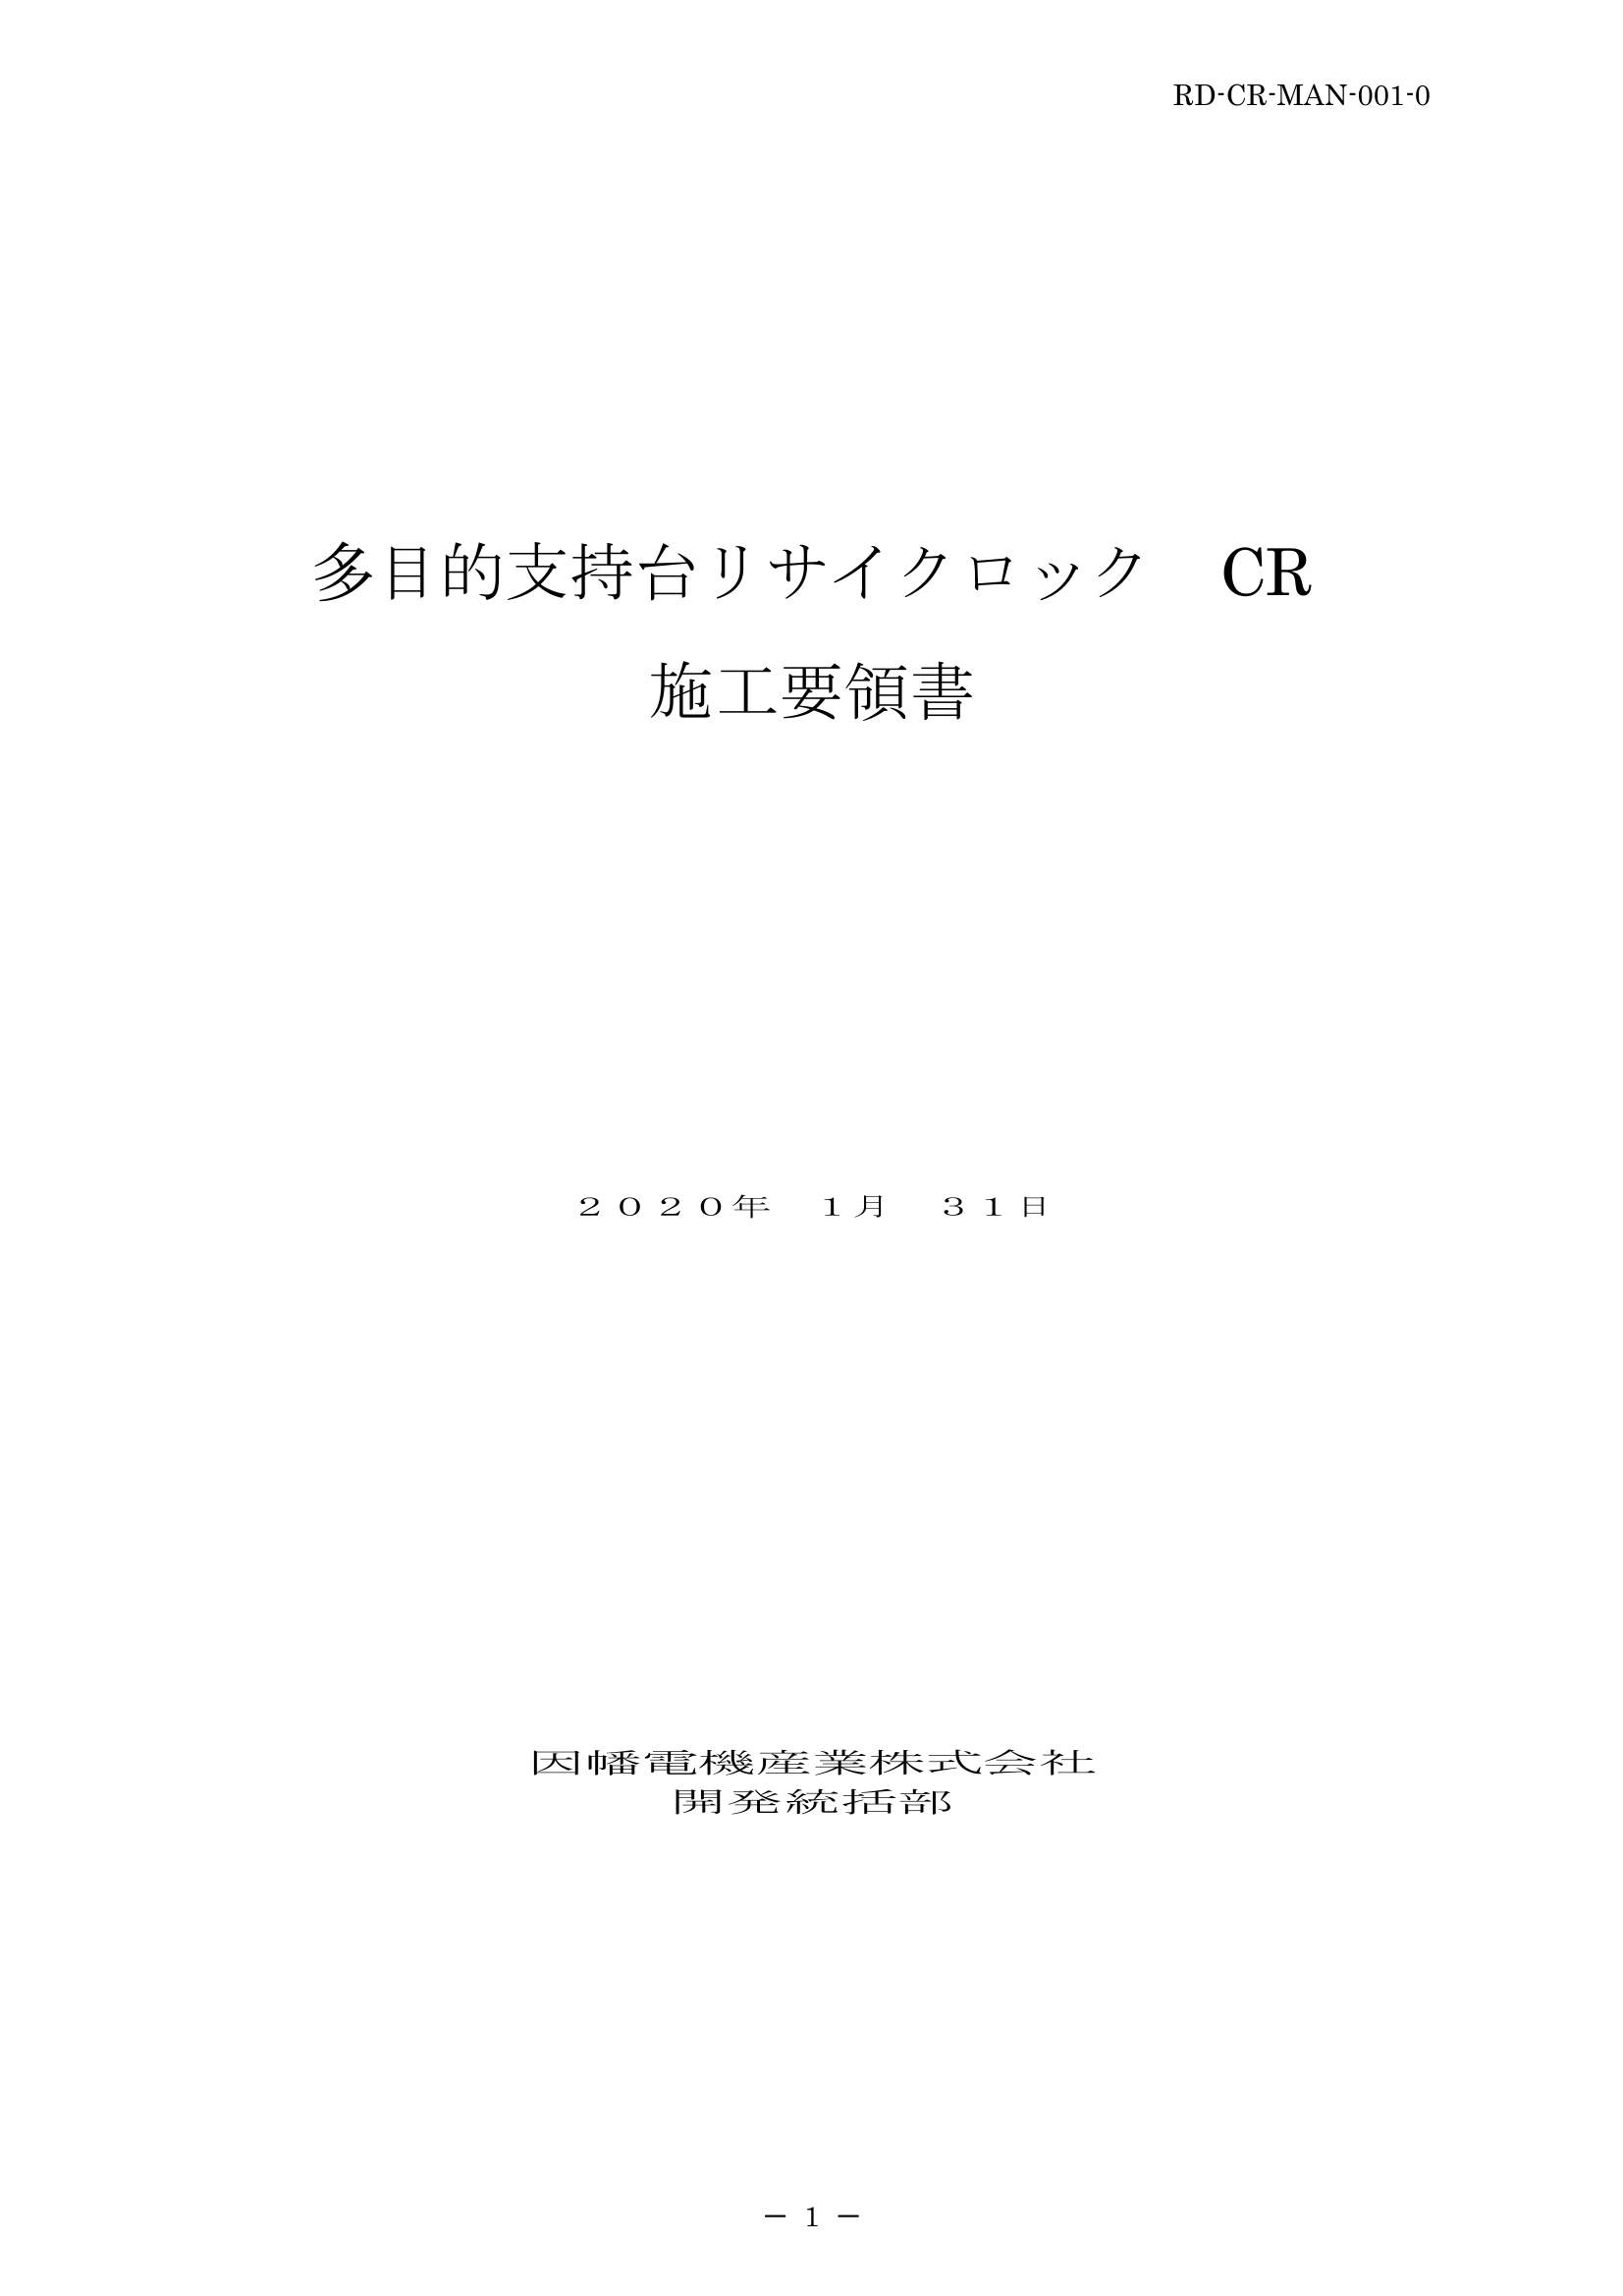 CR_施工要領手順書_20200131.pdf